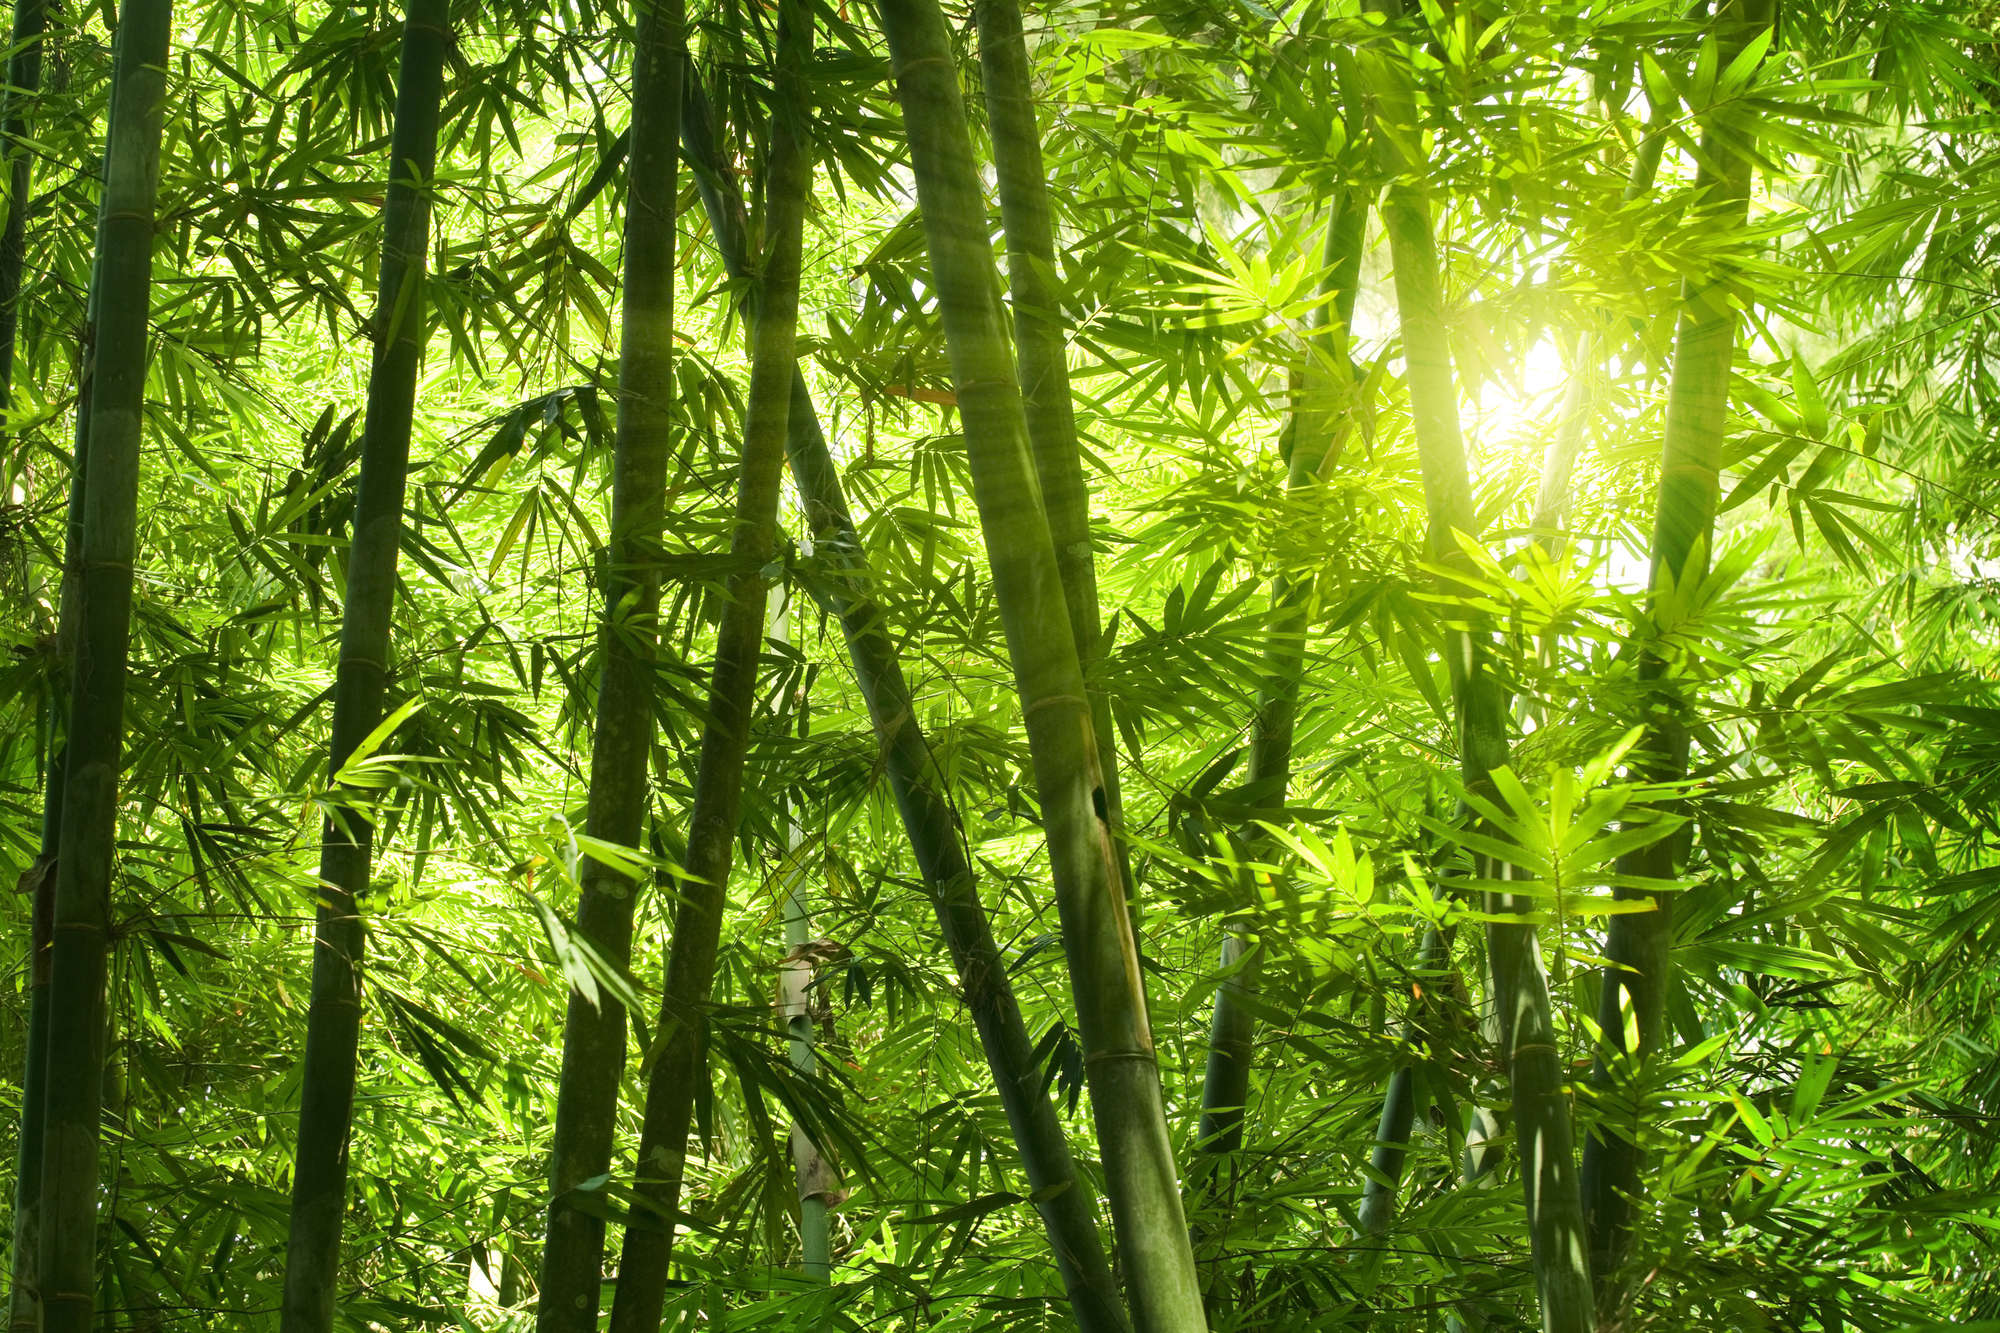             Natur Fototapete Bambuswald Motiv auf Premium Glattvlies
        